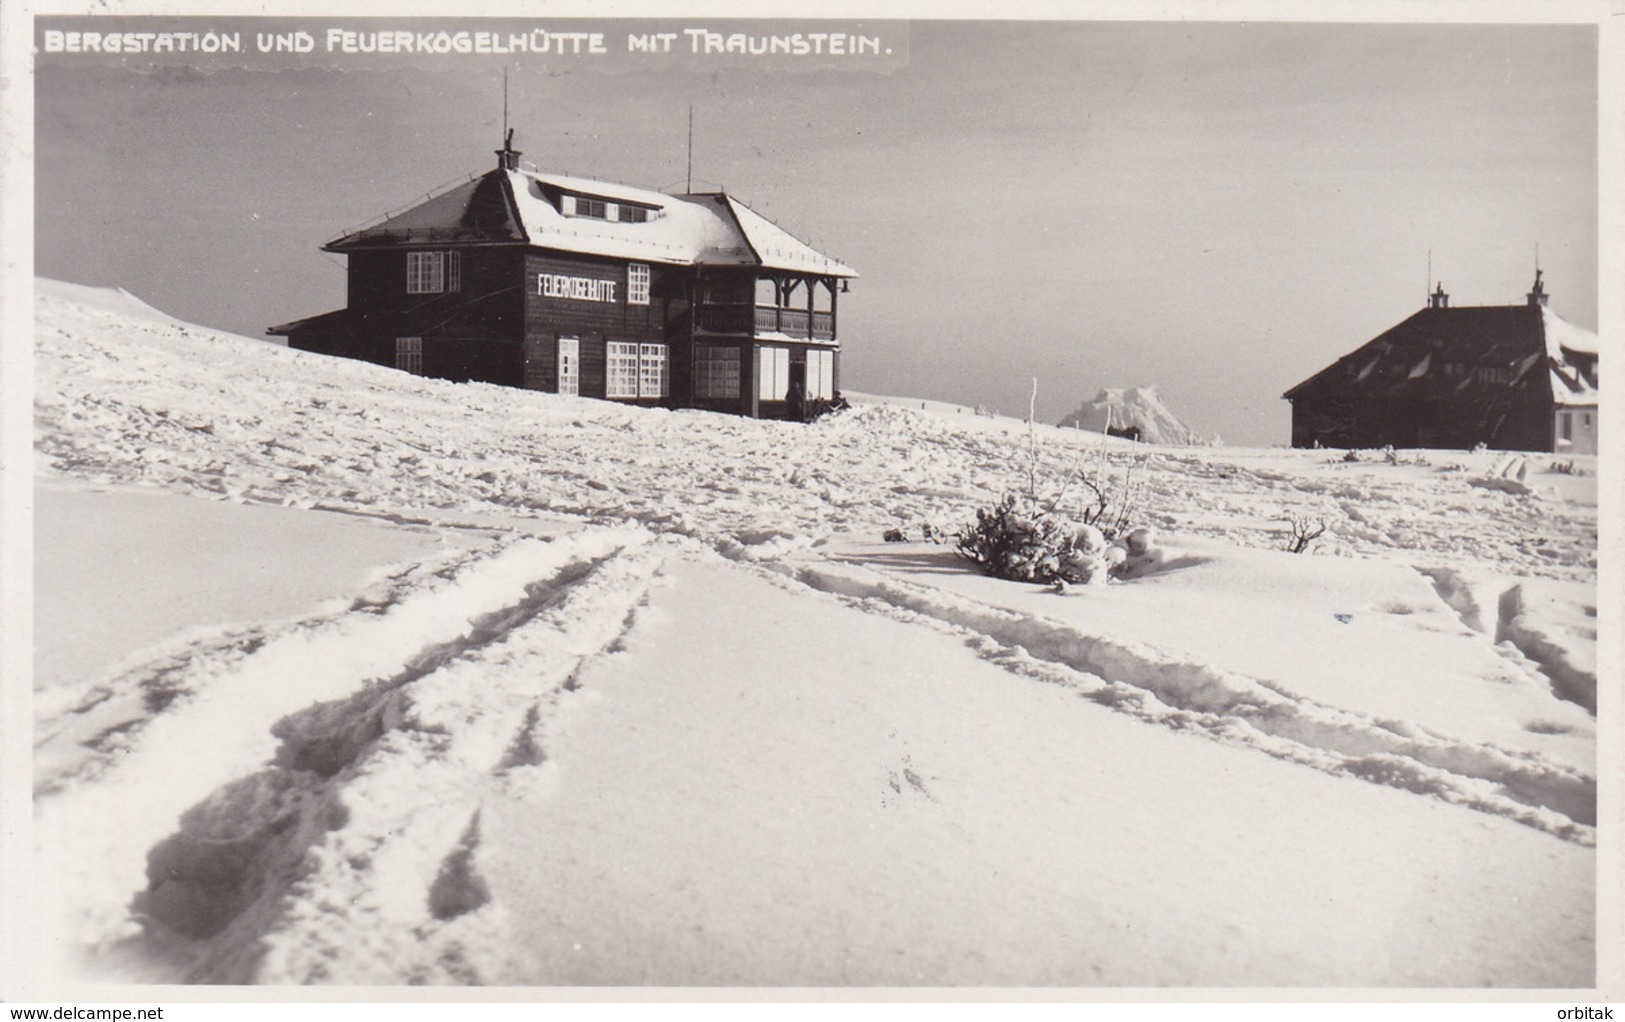 Feuerkogelhütte * Berghütte, Bergstation, Traunstein, Winter, Gebirge, Alpen * Österreich * AK2158 - Ebensee